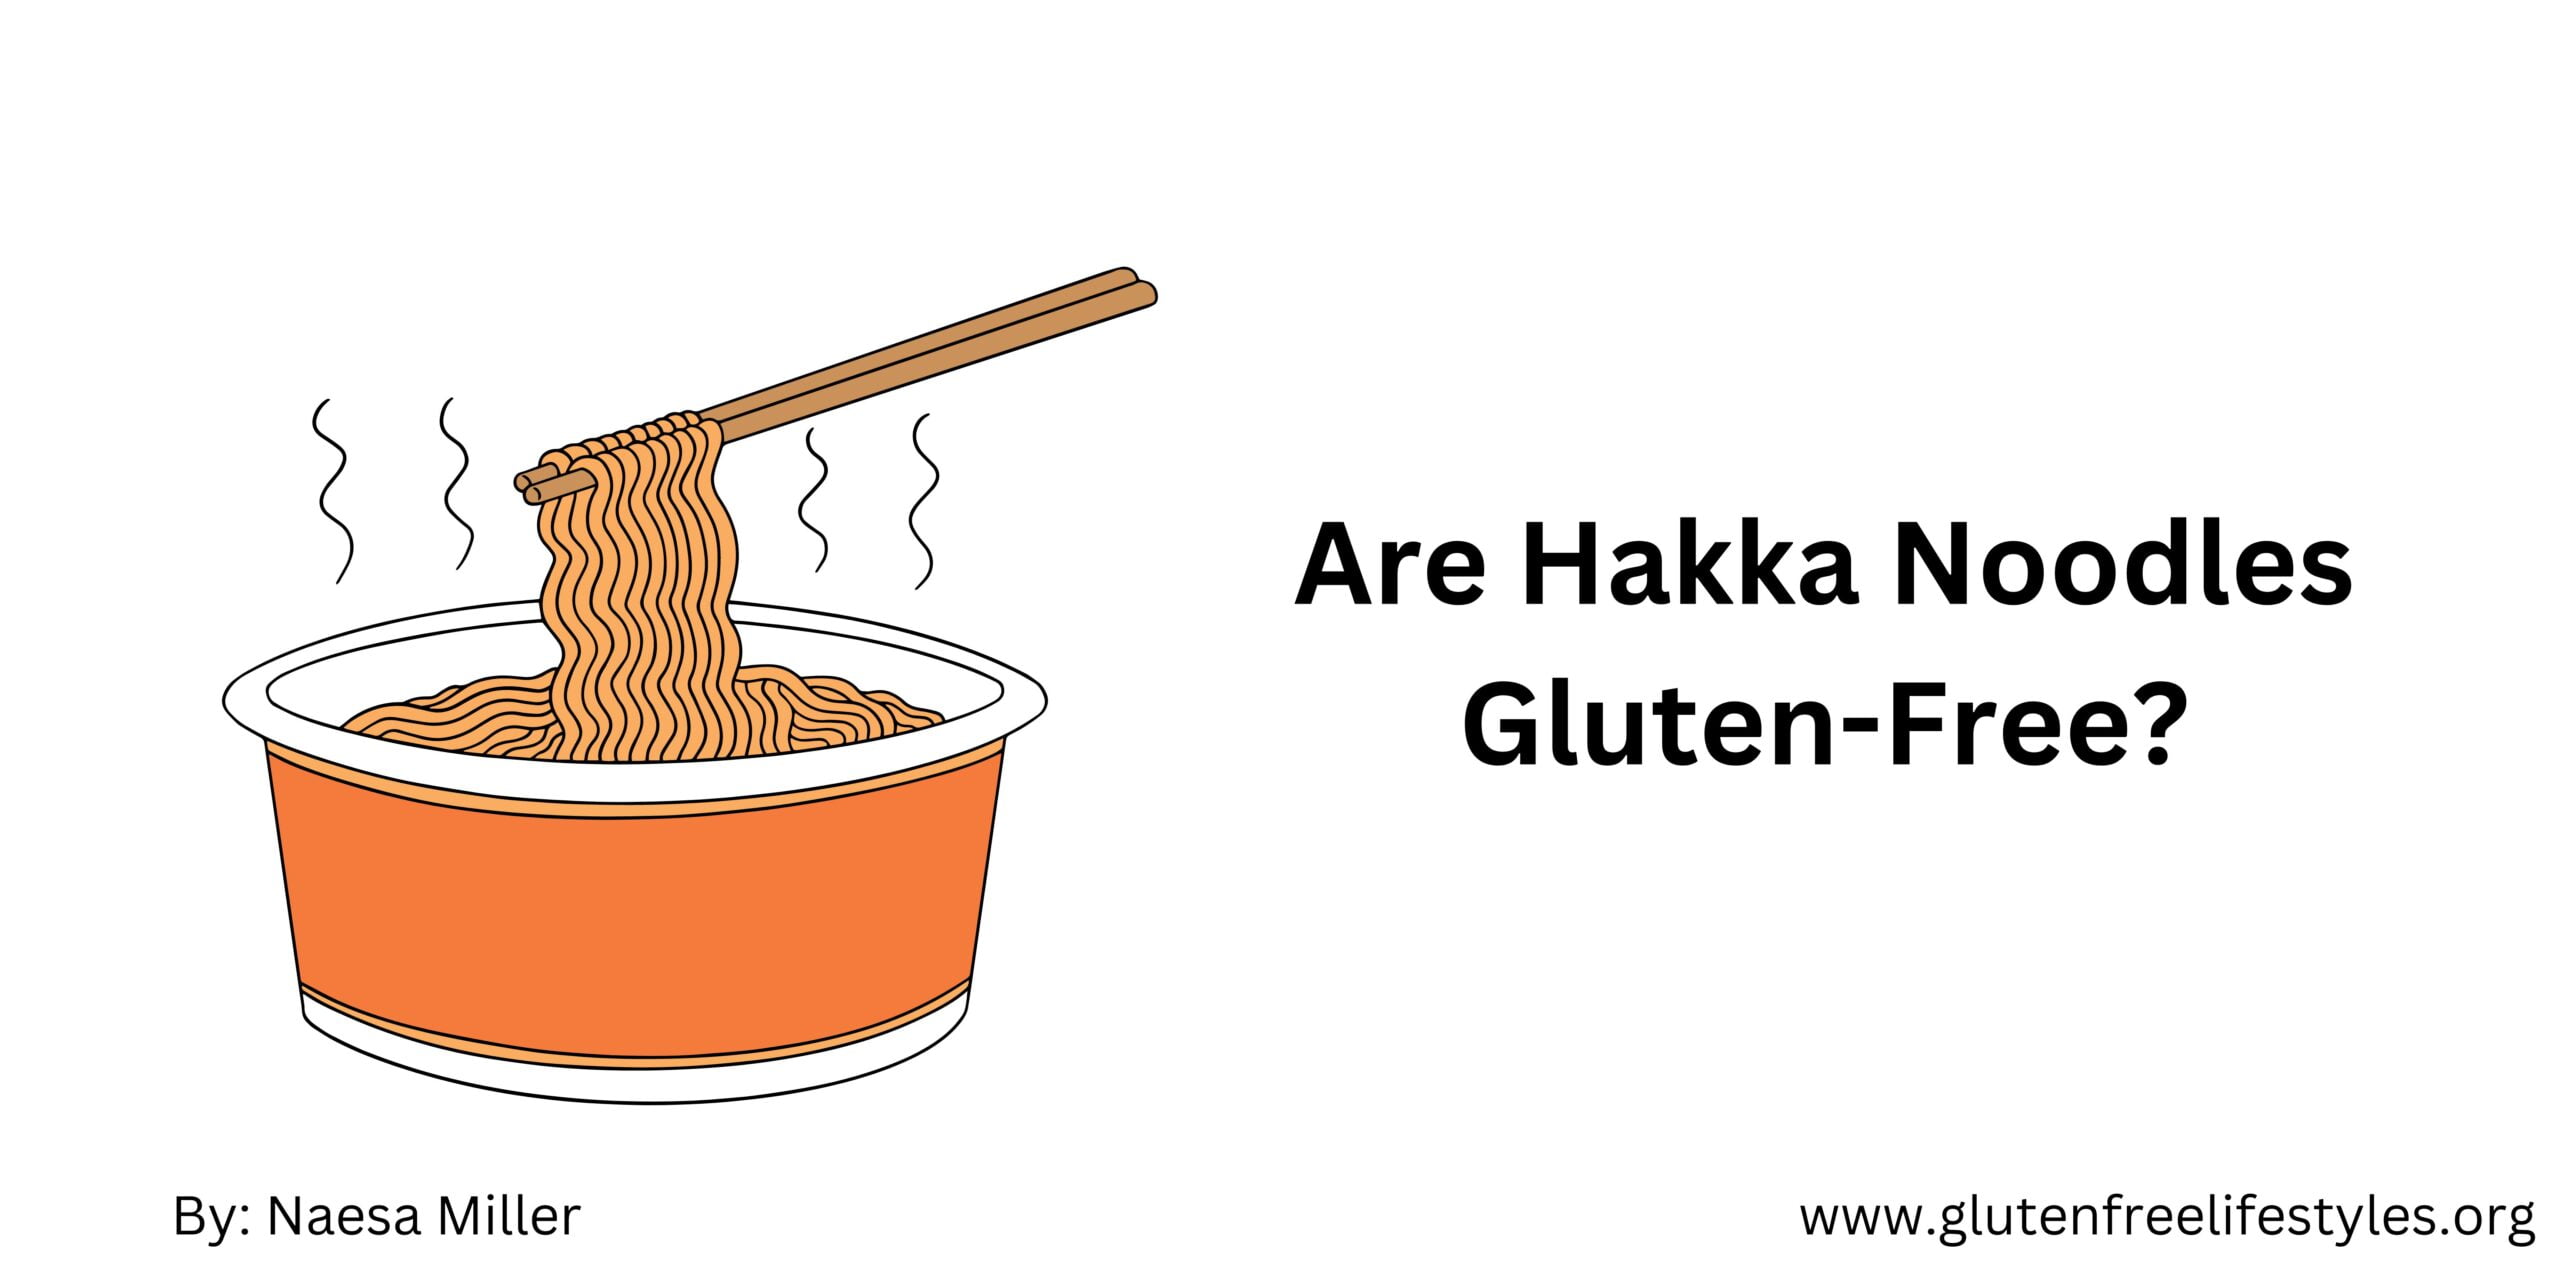 Are Hakka Noodles Gluten-Free?